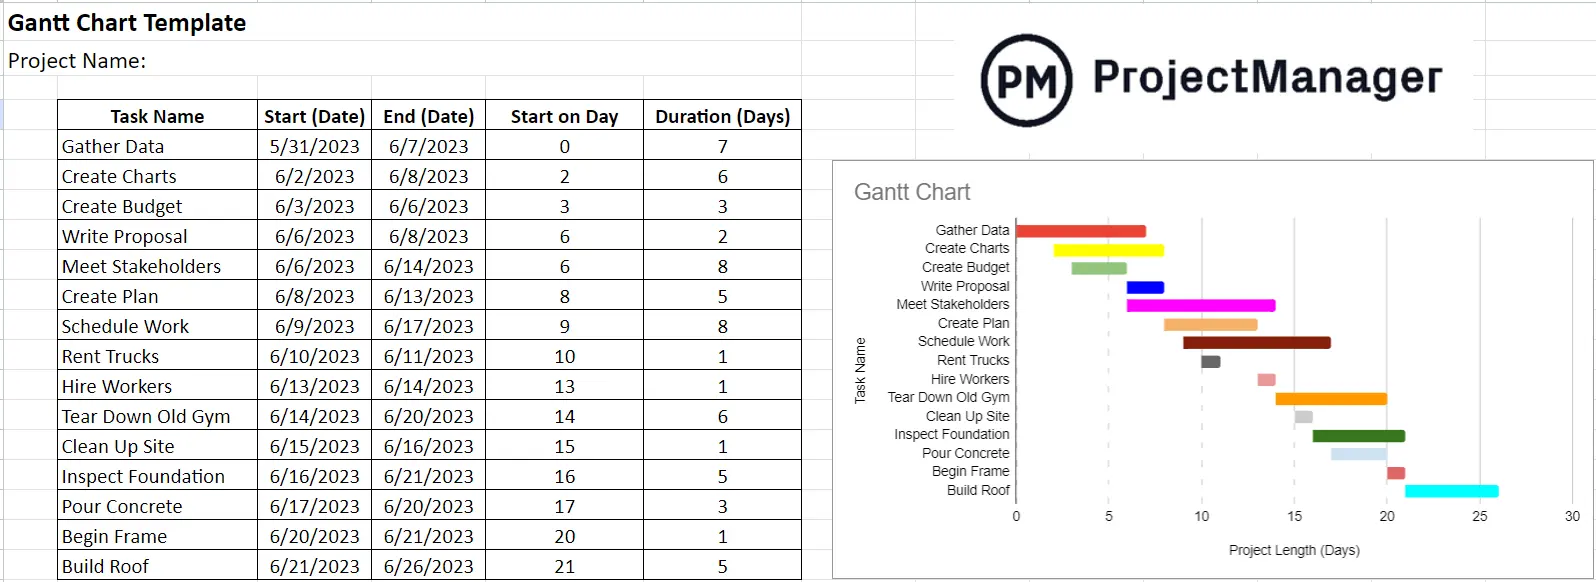 ProjectManager Gantt chart template